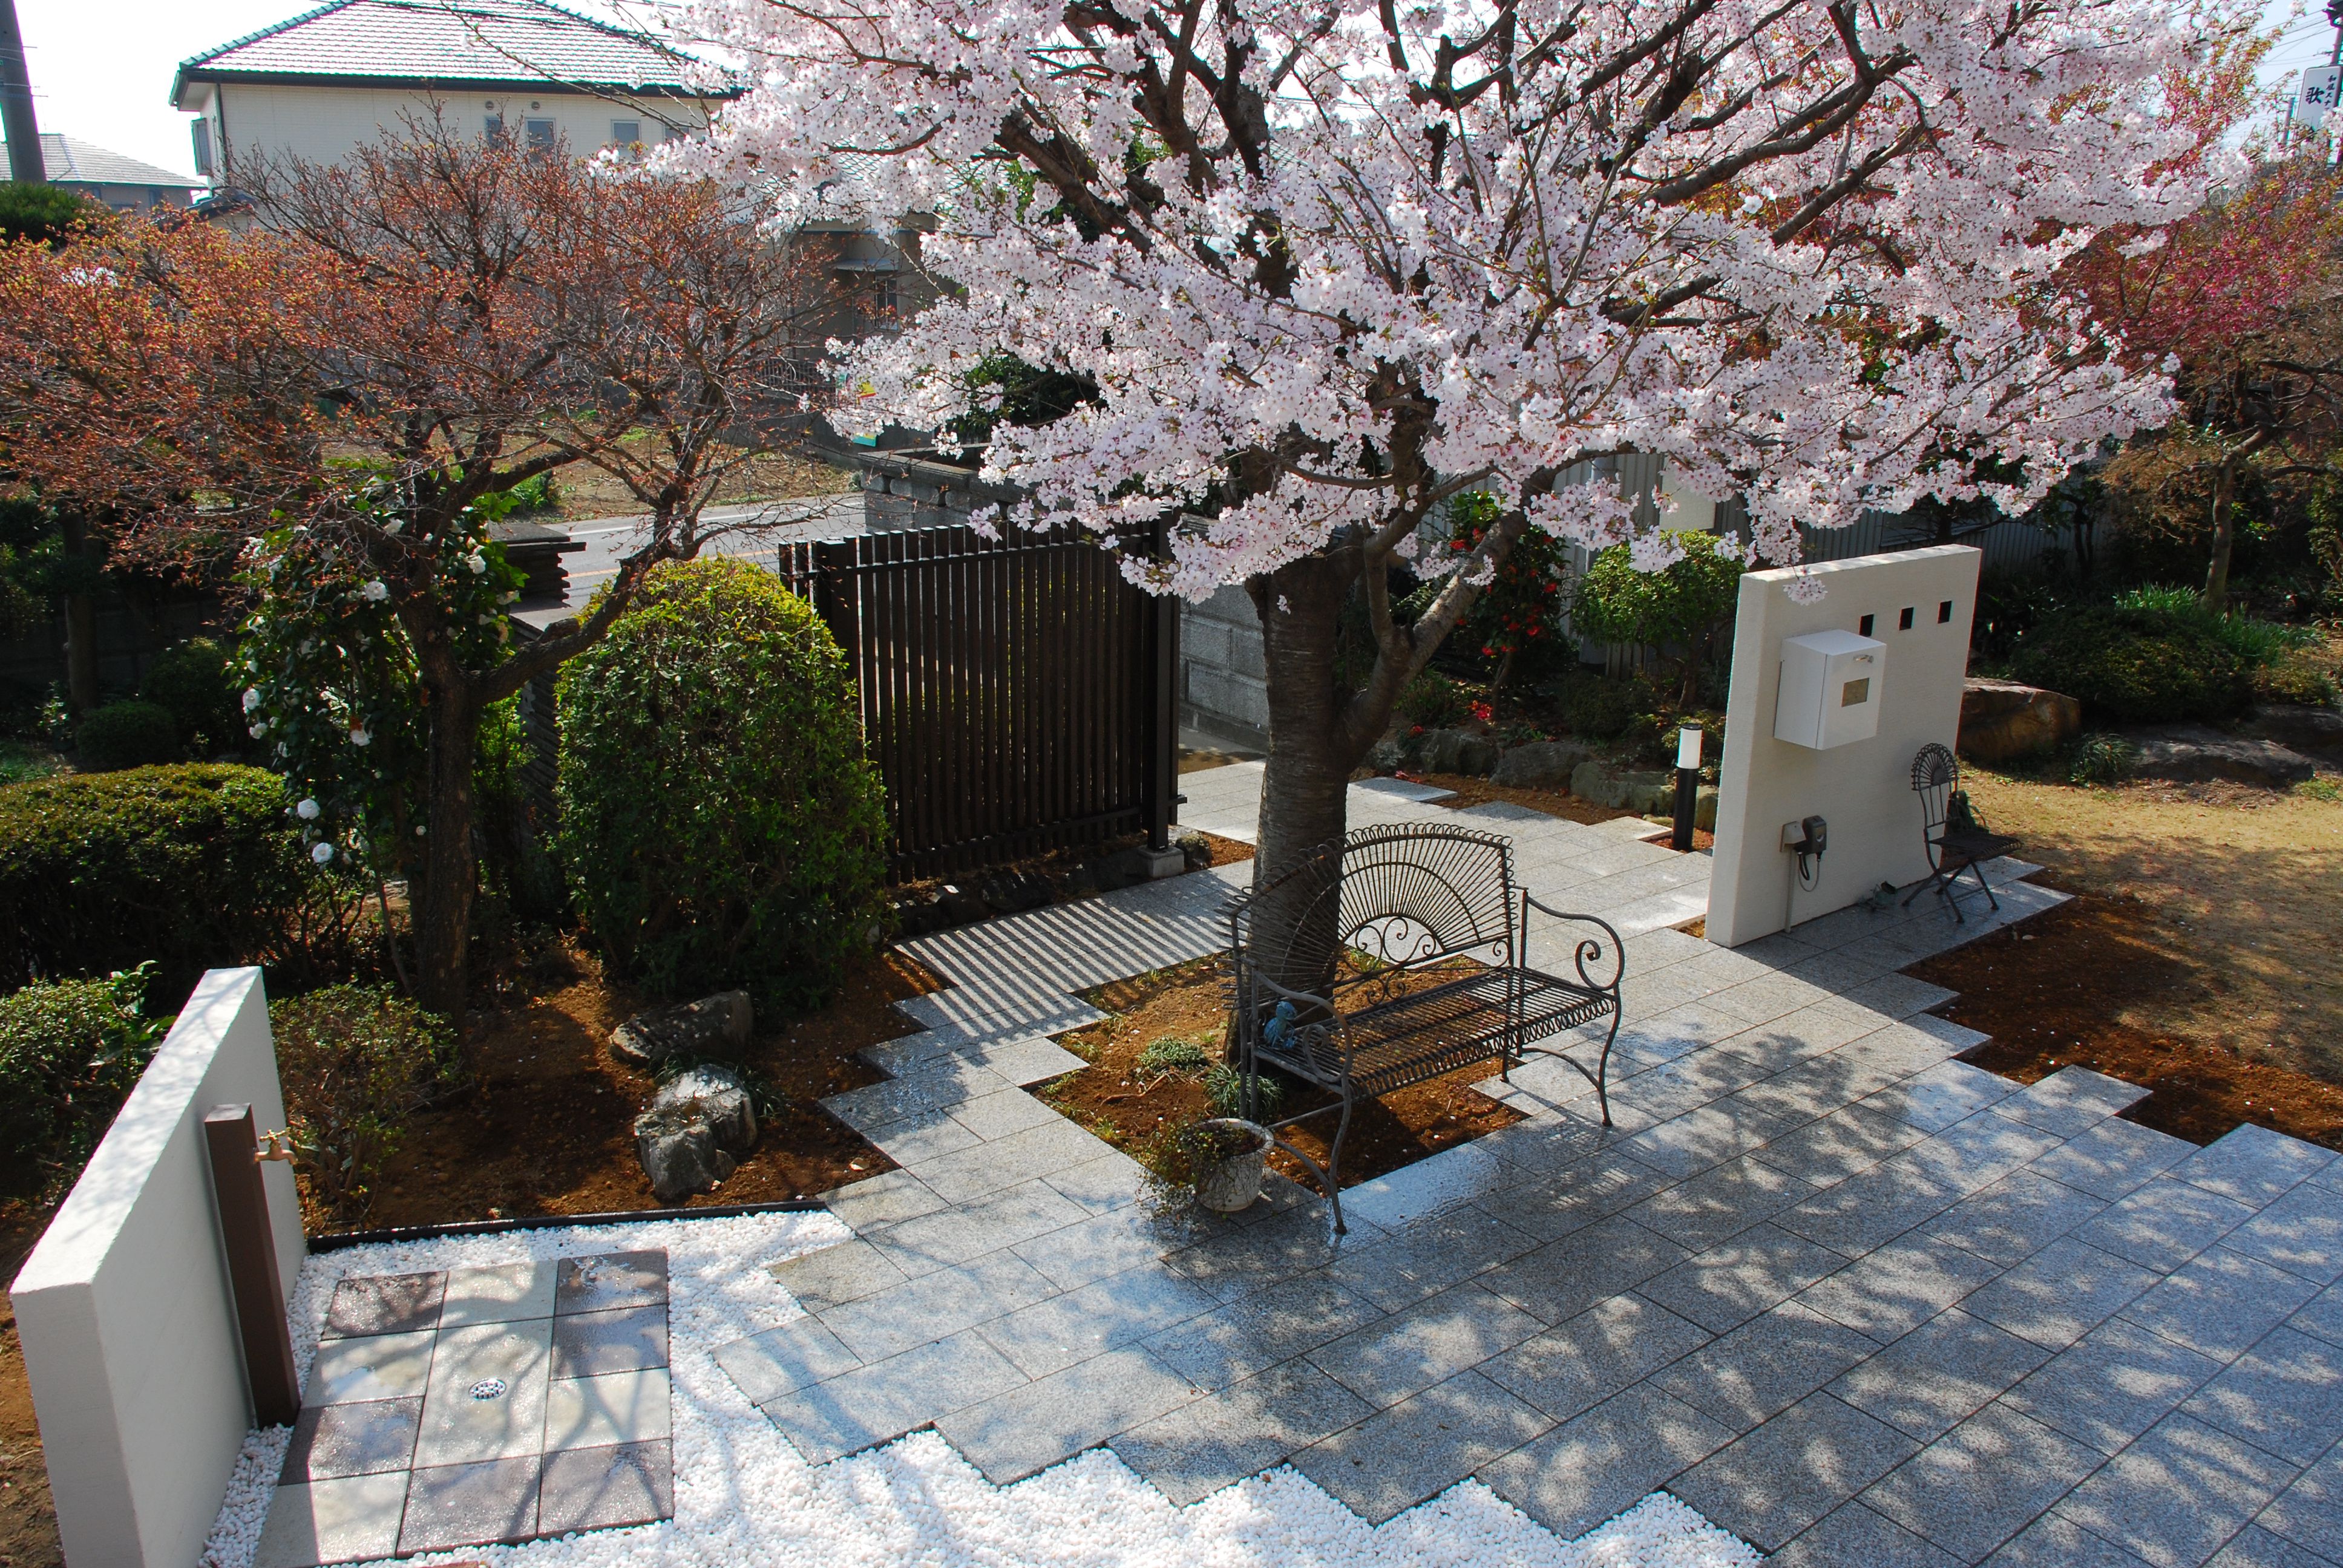 シンボルツリーの桜を活かした和モダンのガーデンリフォーム 一戸建て リフォーム事例 Lixilリフォームネット